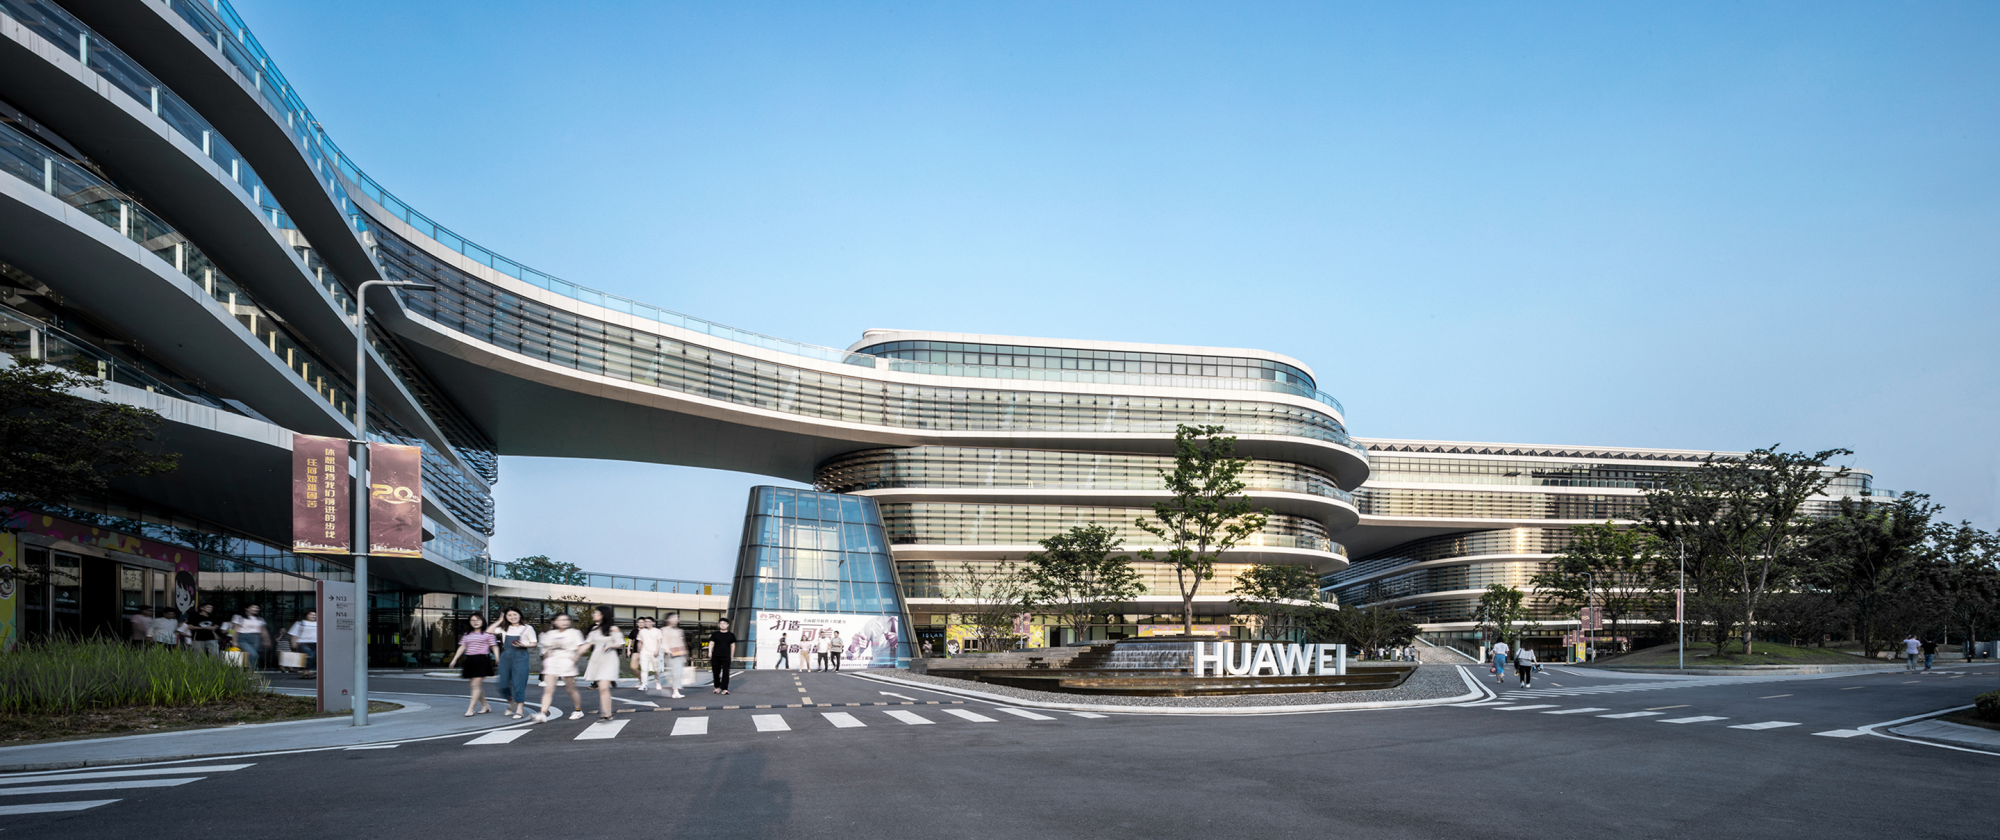 Este es el sorprendente nuevo centro de investigación y desarrollo de Huawei en Nanjing, China